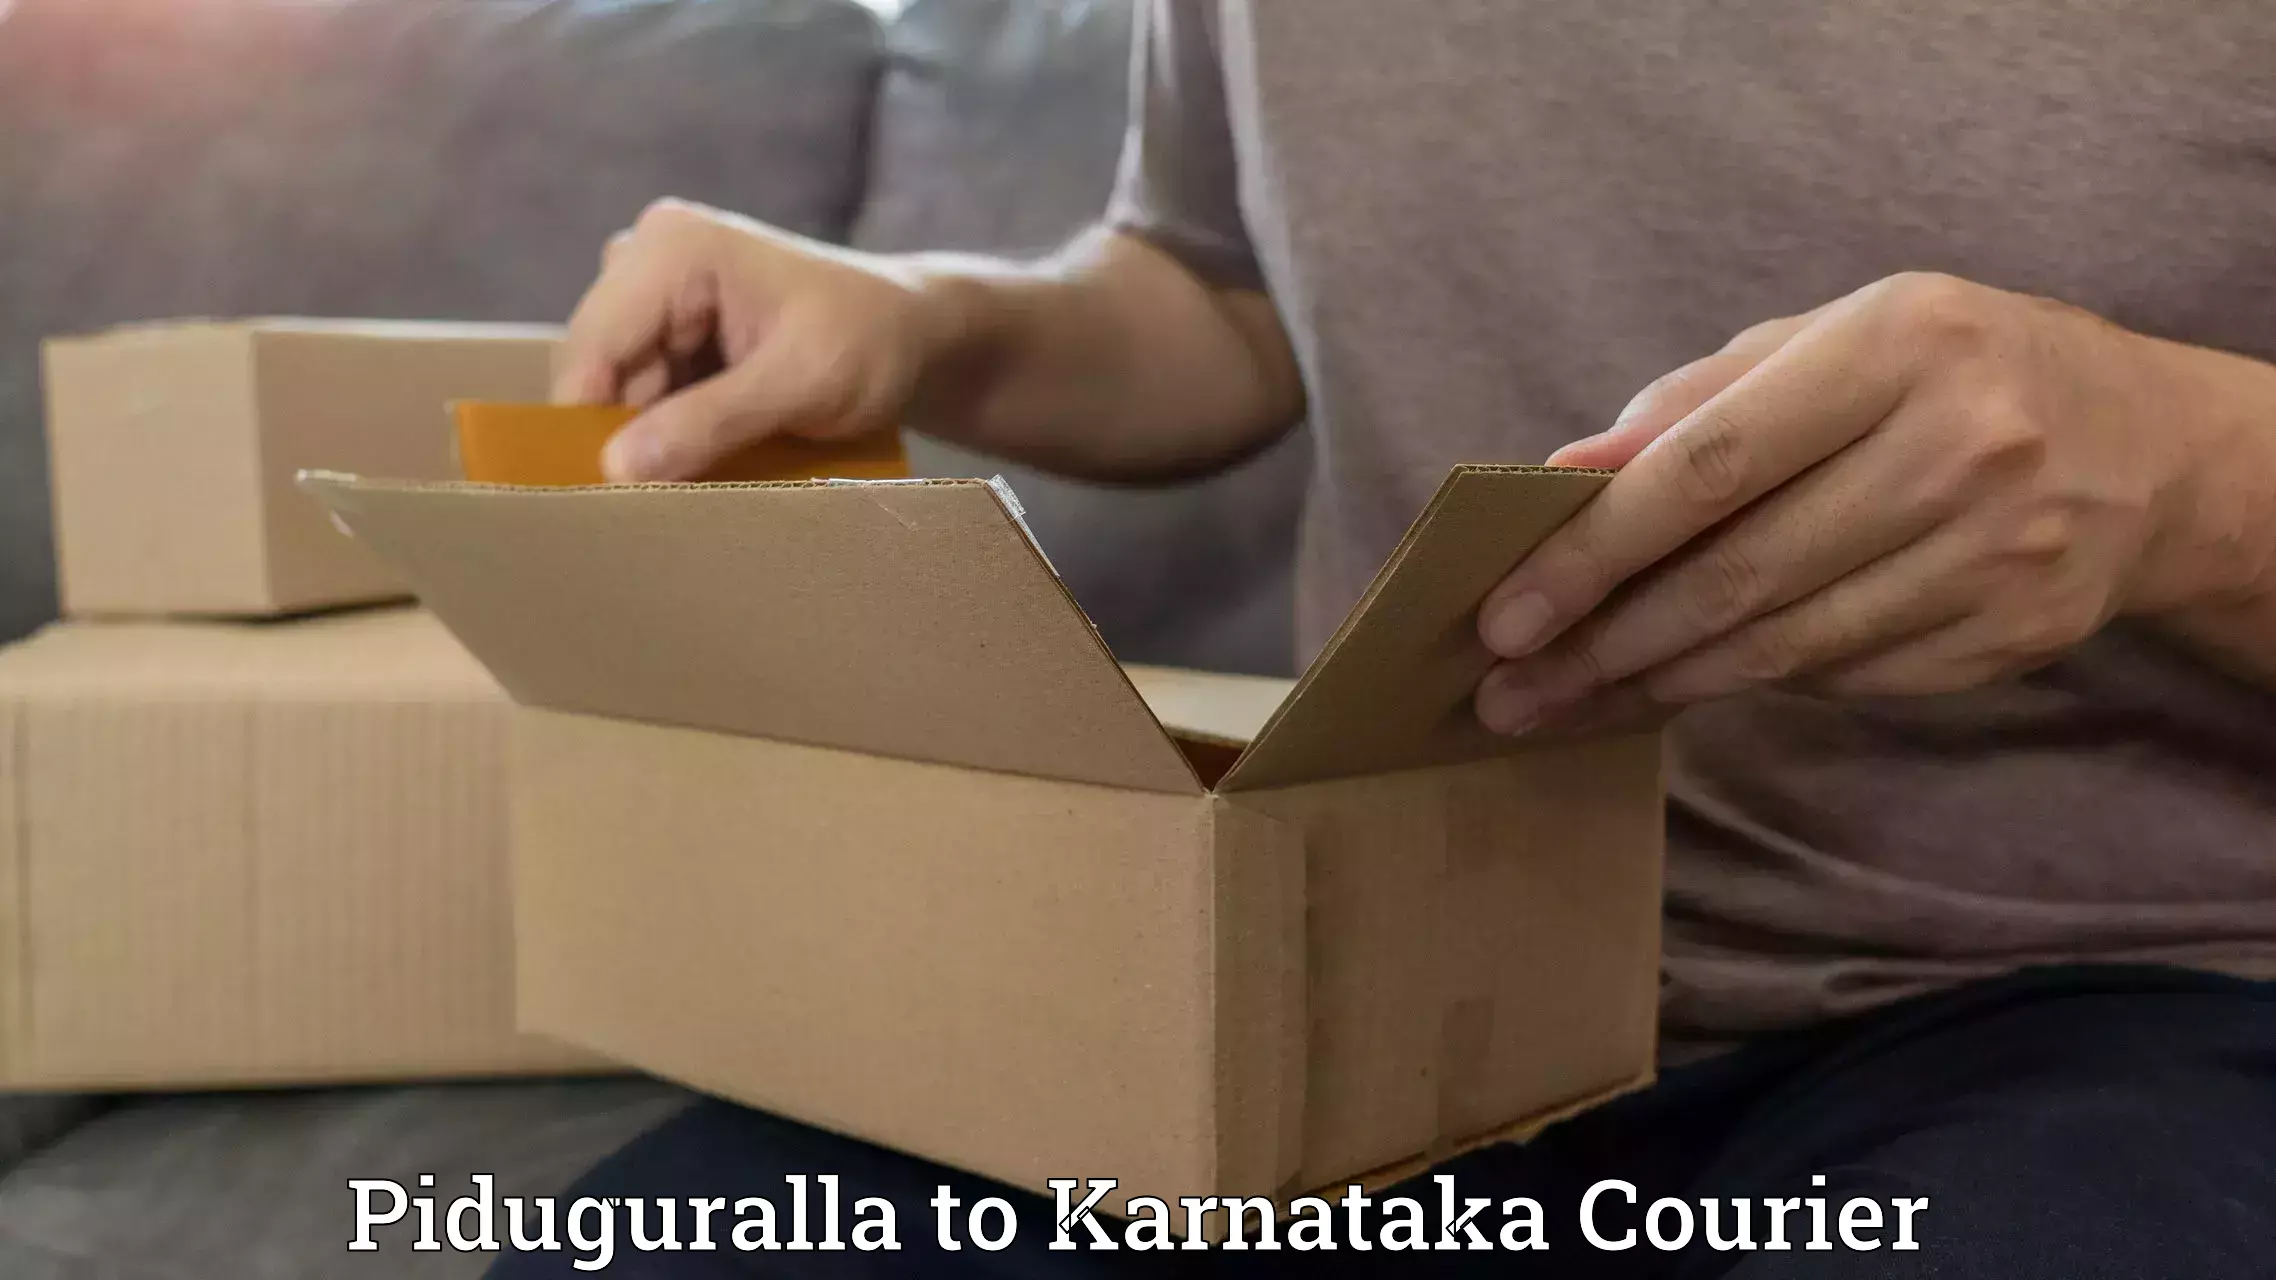 Courier service comparison in Piduguralla to Ullal